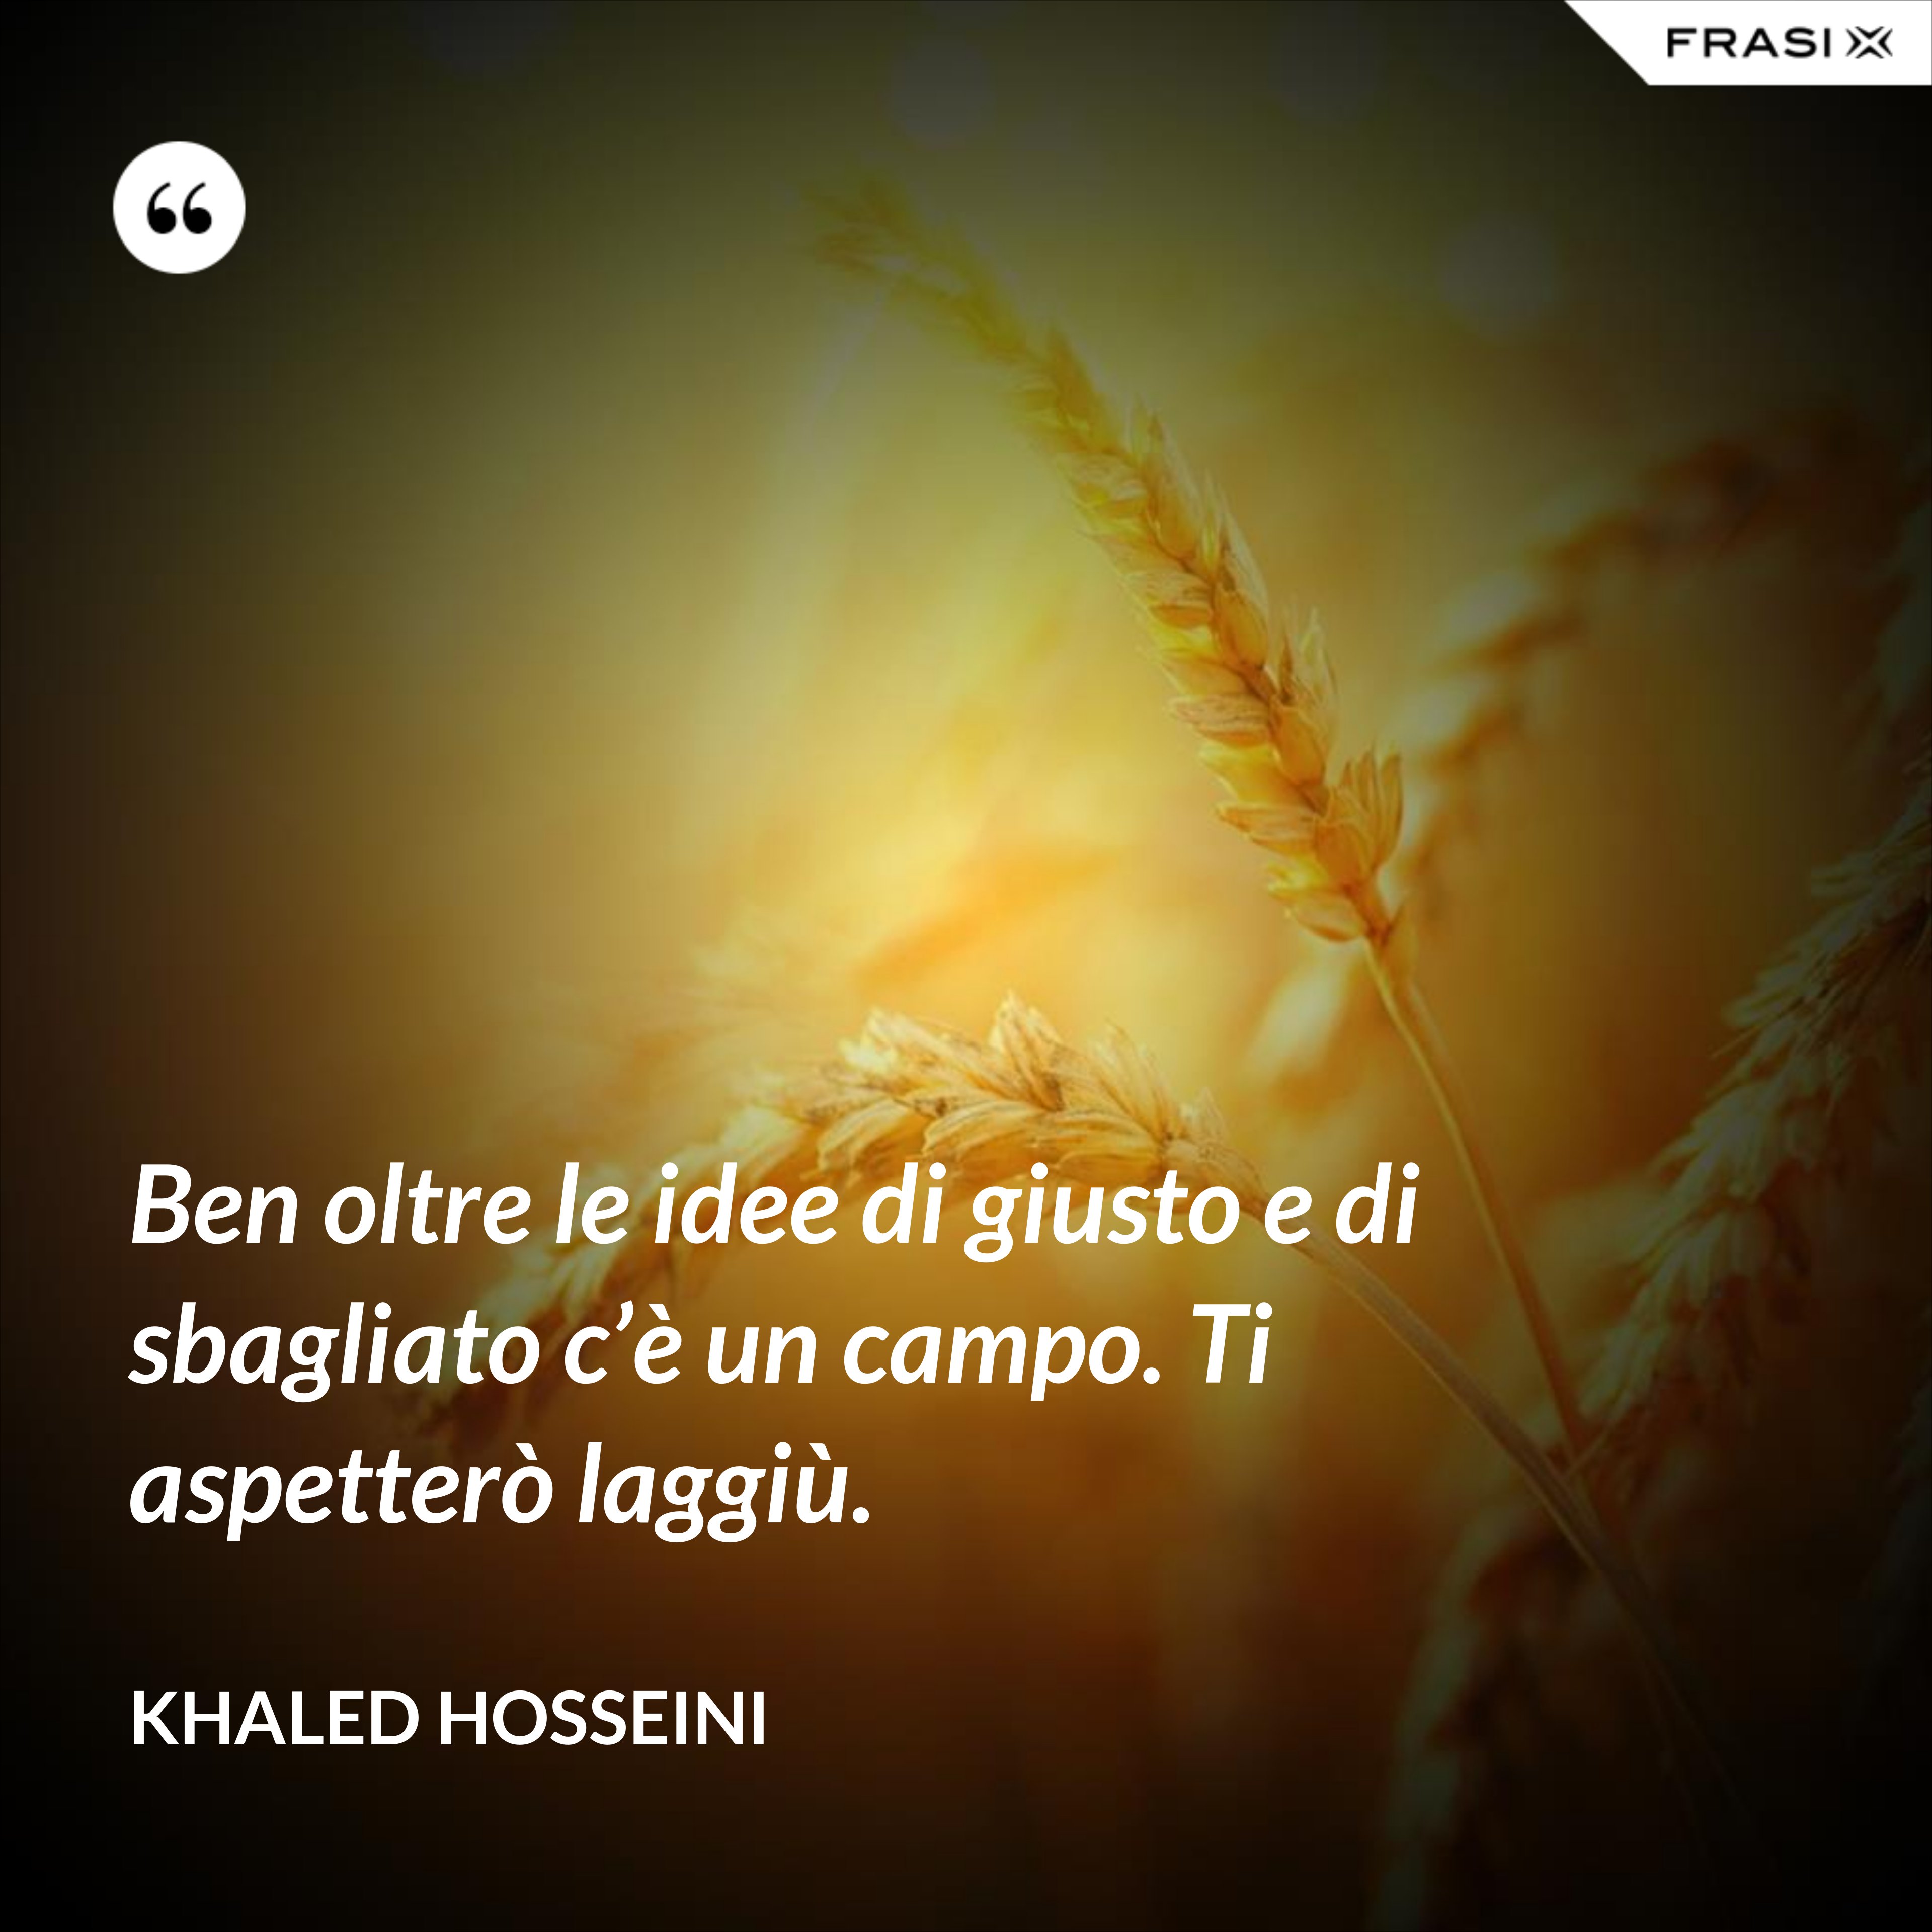 Ben oltre le idee di giusto e di sbagliato c’è un campo. Ti aspetterò laggiù. - Khaled Hosseini